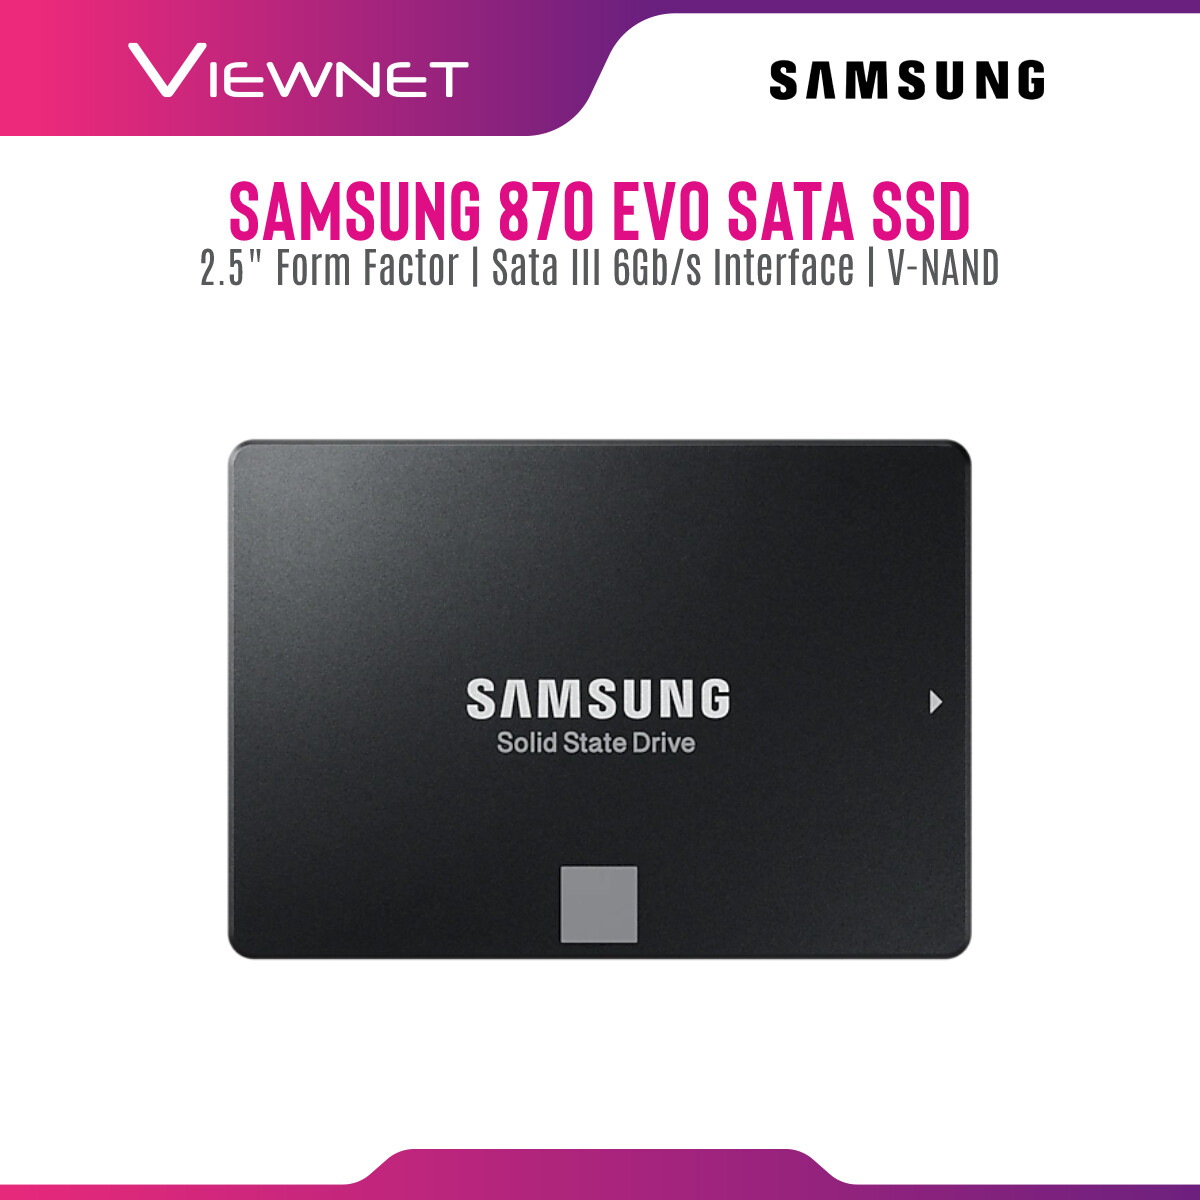 Samsung Internal SSD 870 EVO SATA III 2.5 inch V-NAND 3 bit MLC Internal Solid State Drive (250GB/500GB/1TB/2TB/4TB) Up to 550MB/s Internal SSD